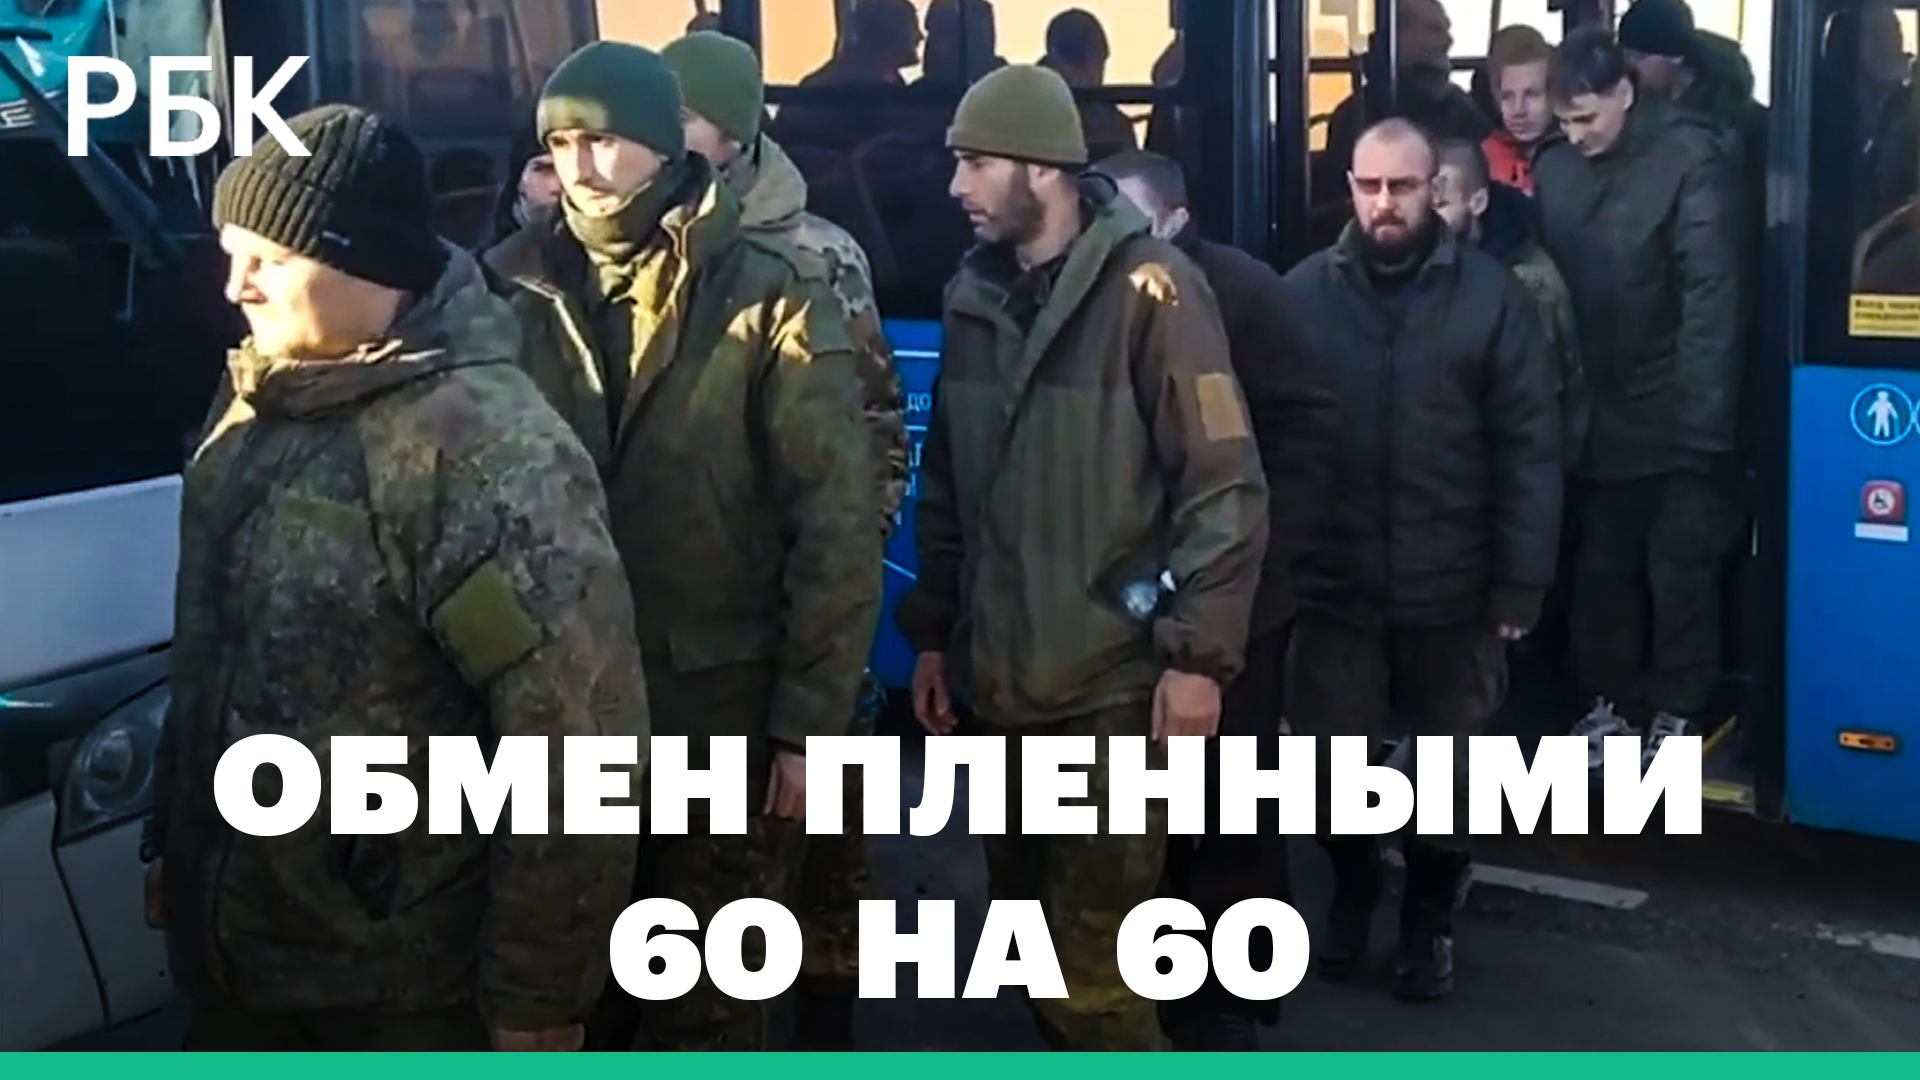 Шестьдесят российских военных вернулись из украинского плена по обмену